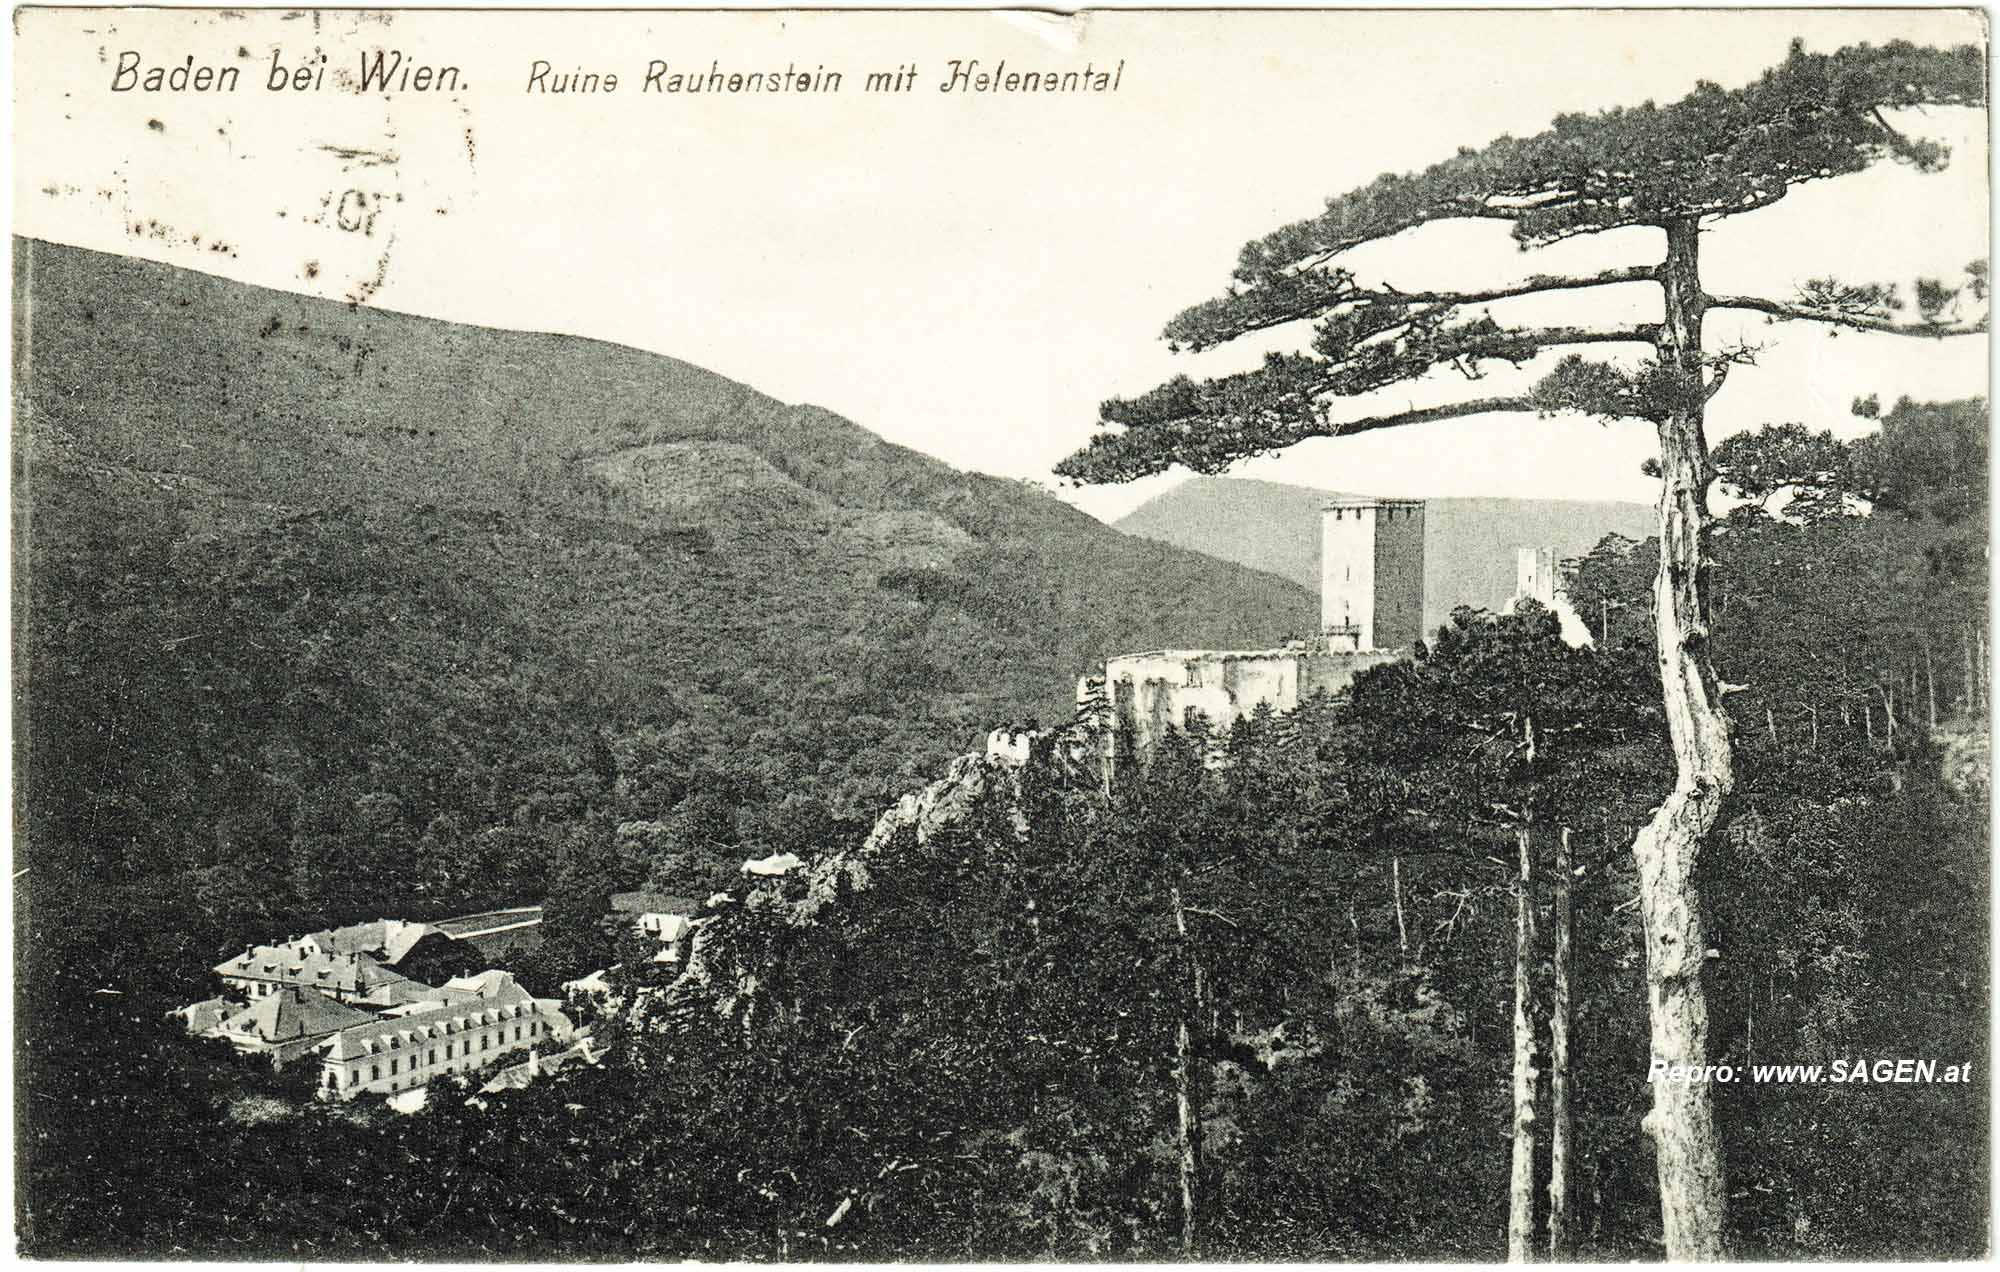 Baden bei Wien. Ruine Rauhenstein mit Helenental